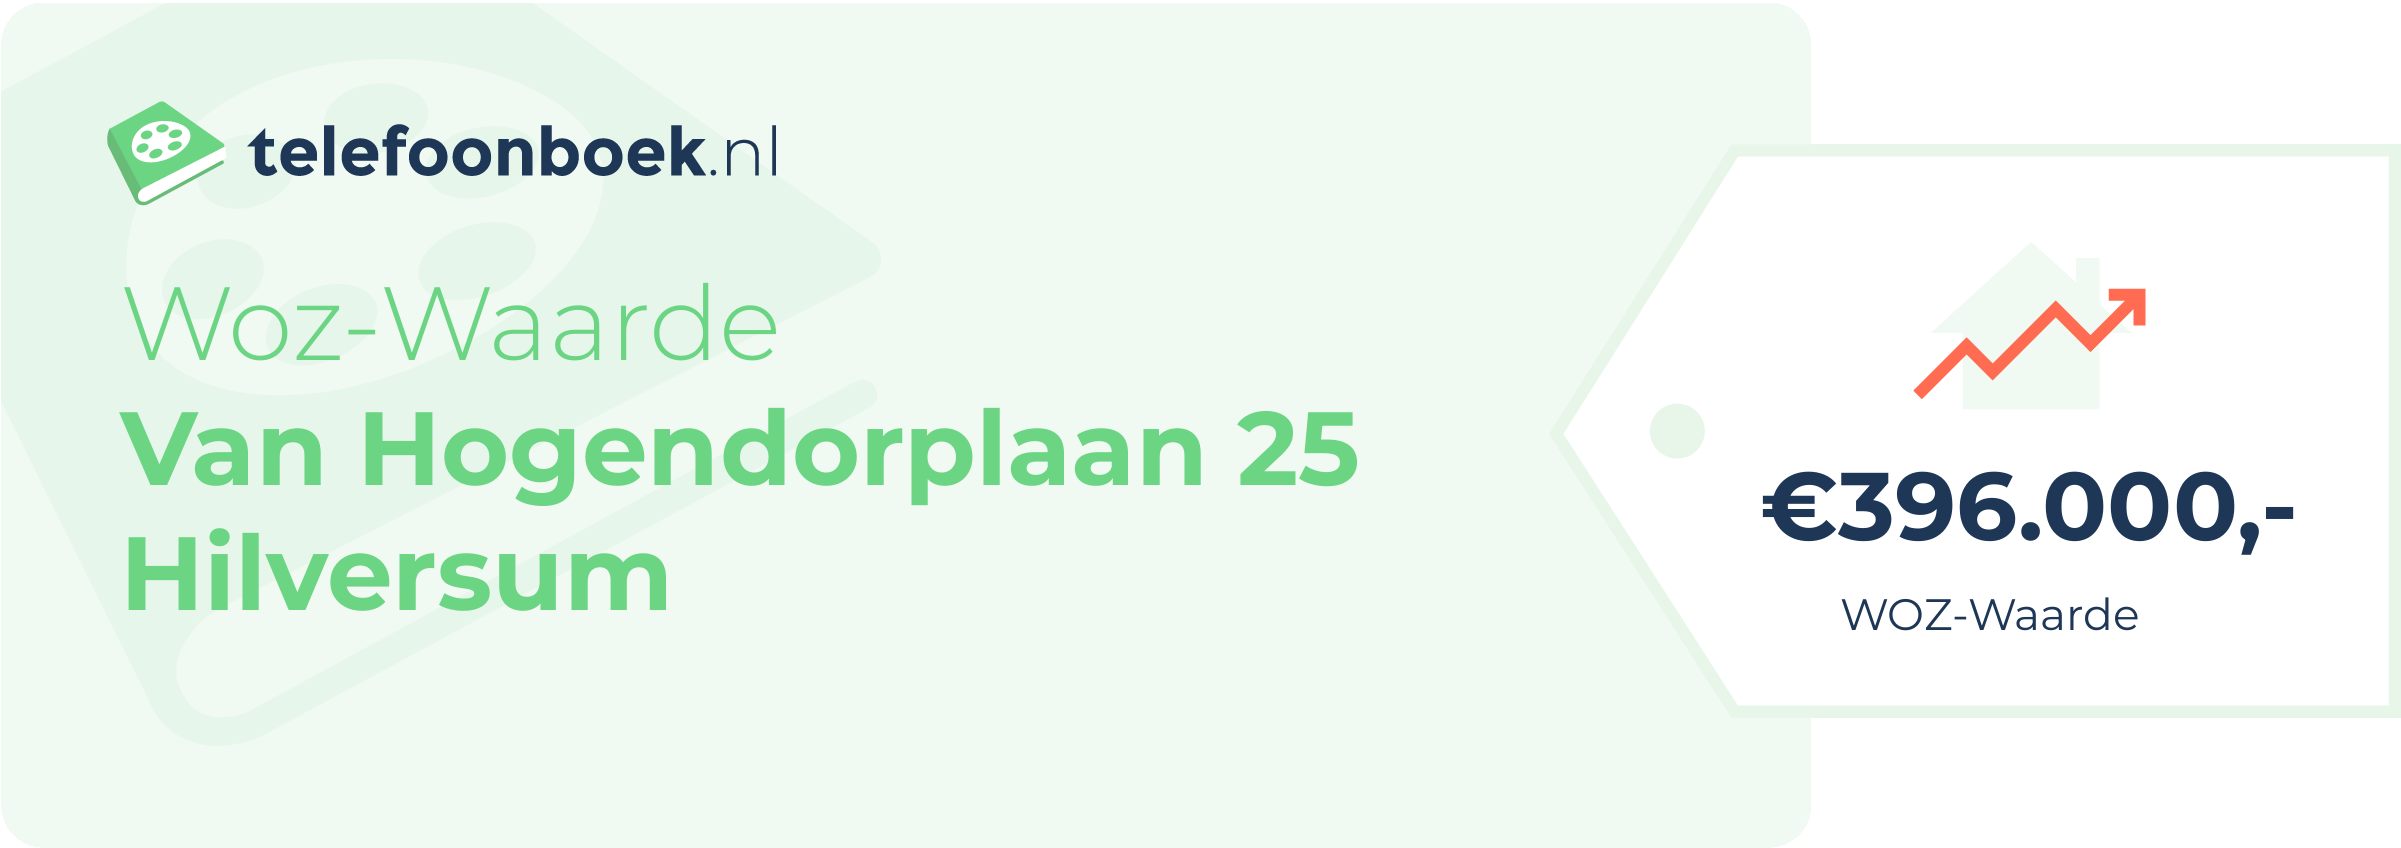 WOZ-waarde Van Hogendorplaan 25 Hilversum